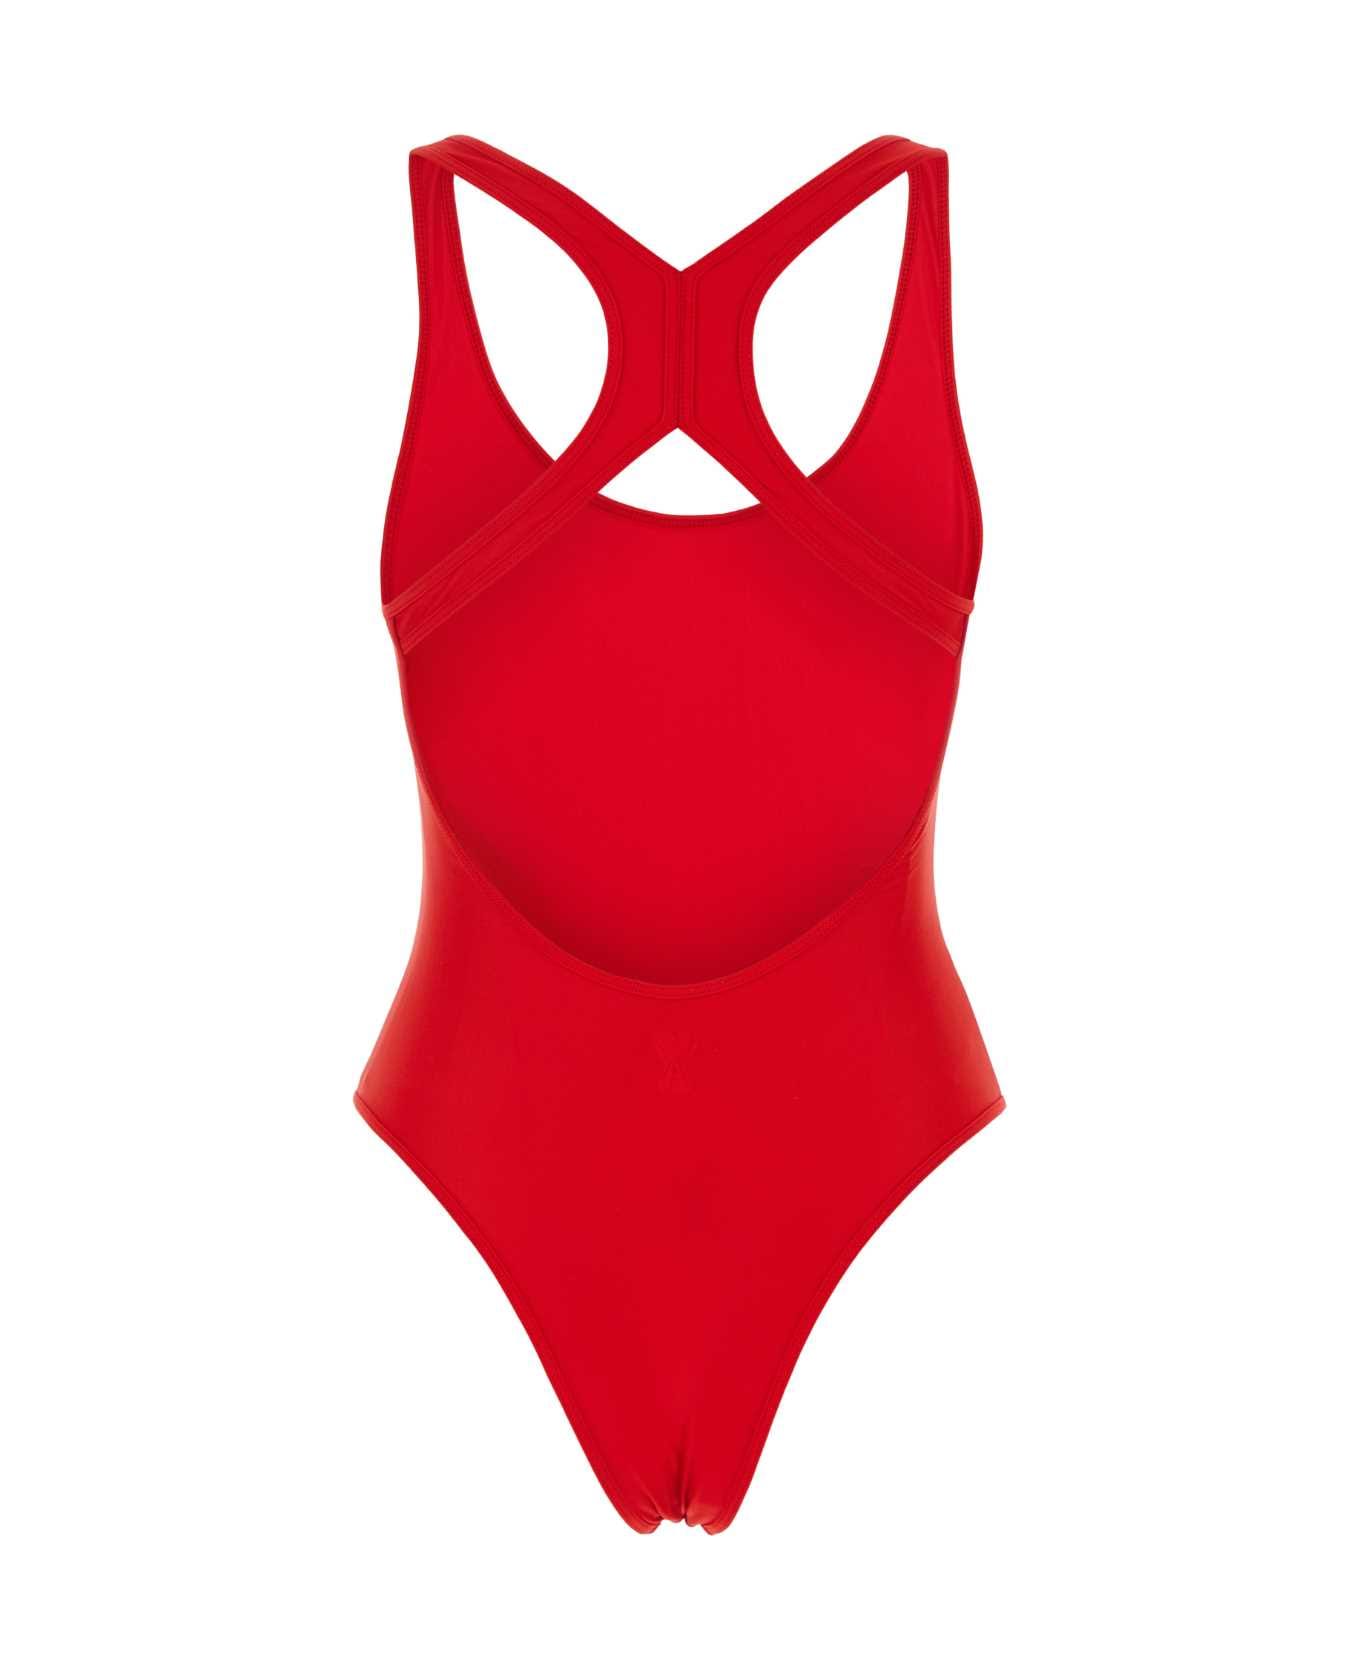 Ami Alexandre Mattiussi Red Stretch Nylon Swimsuit - 681 水着